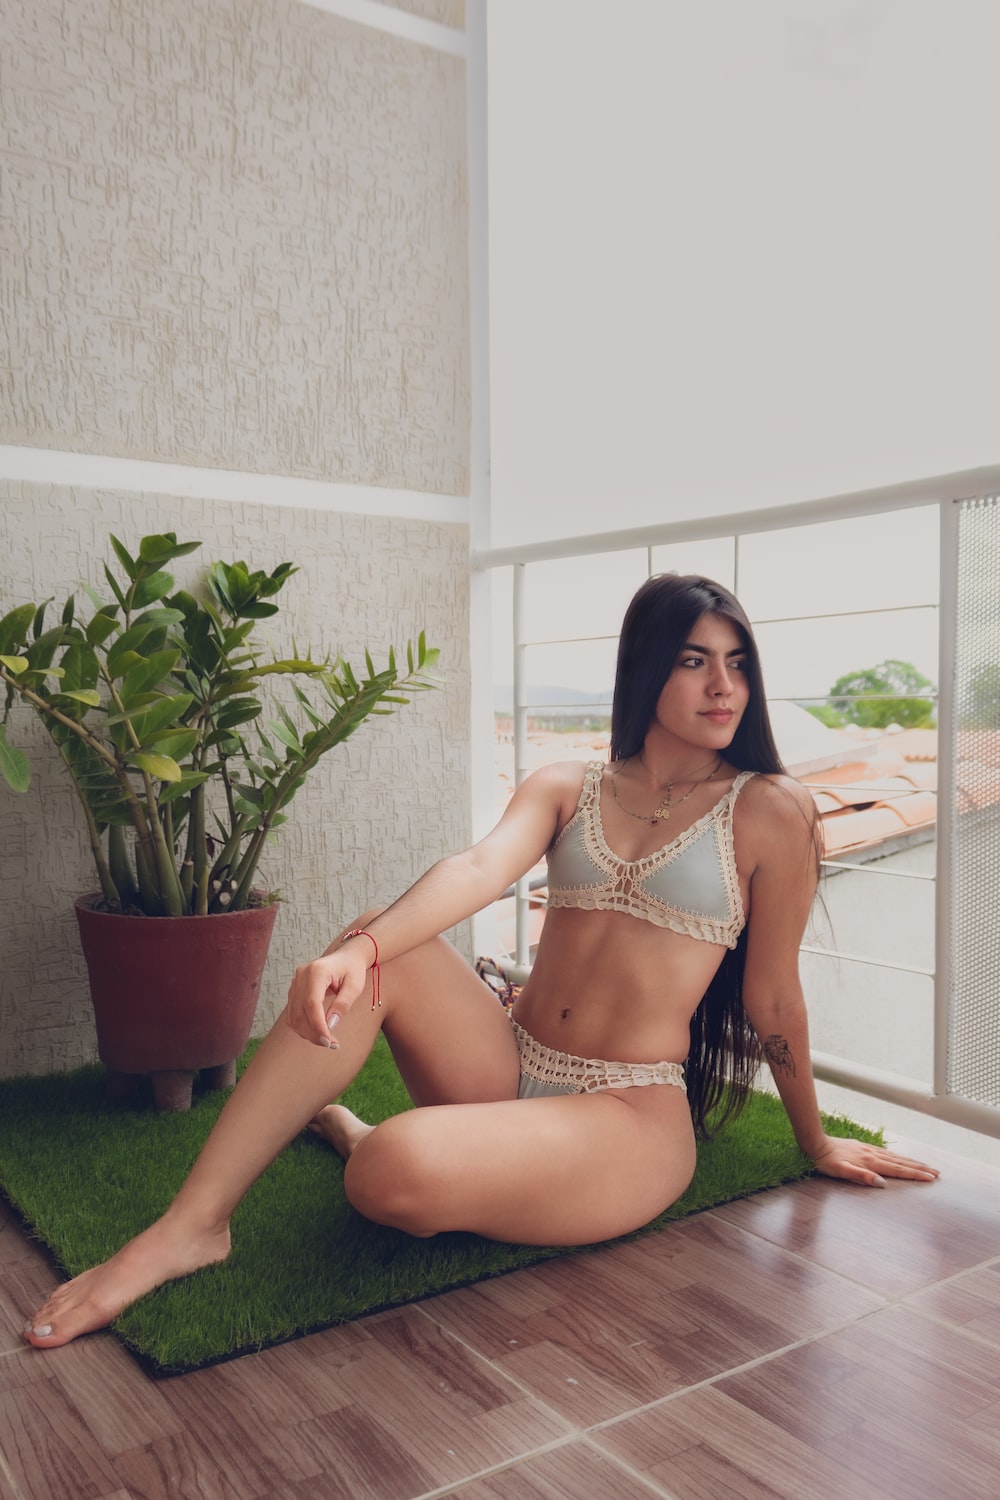 a woman in a bikini sitting on the floor